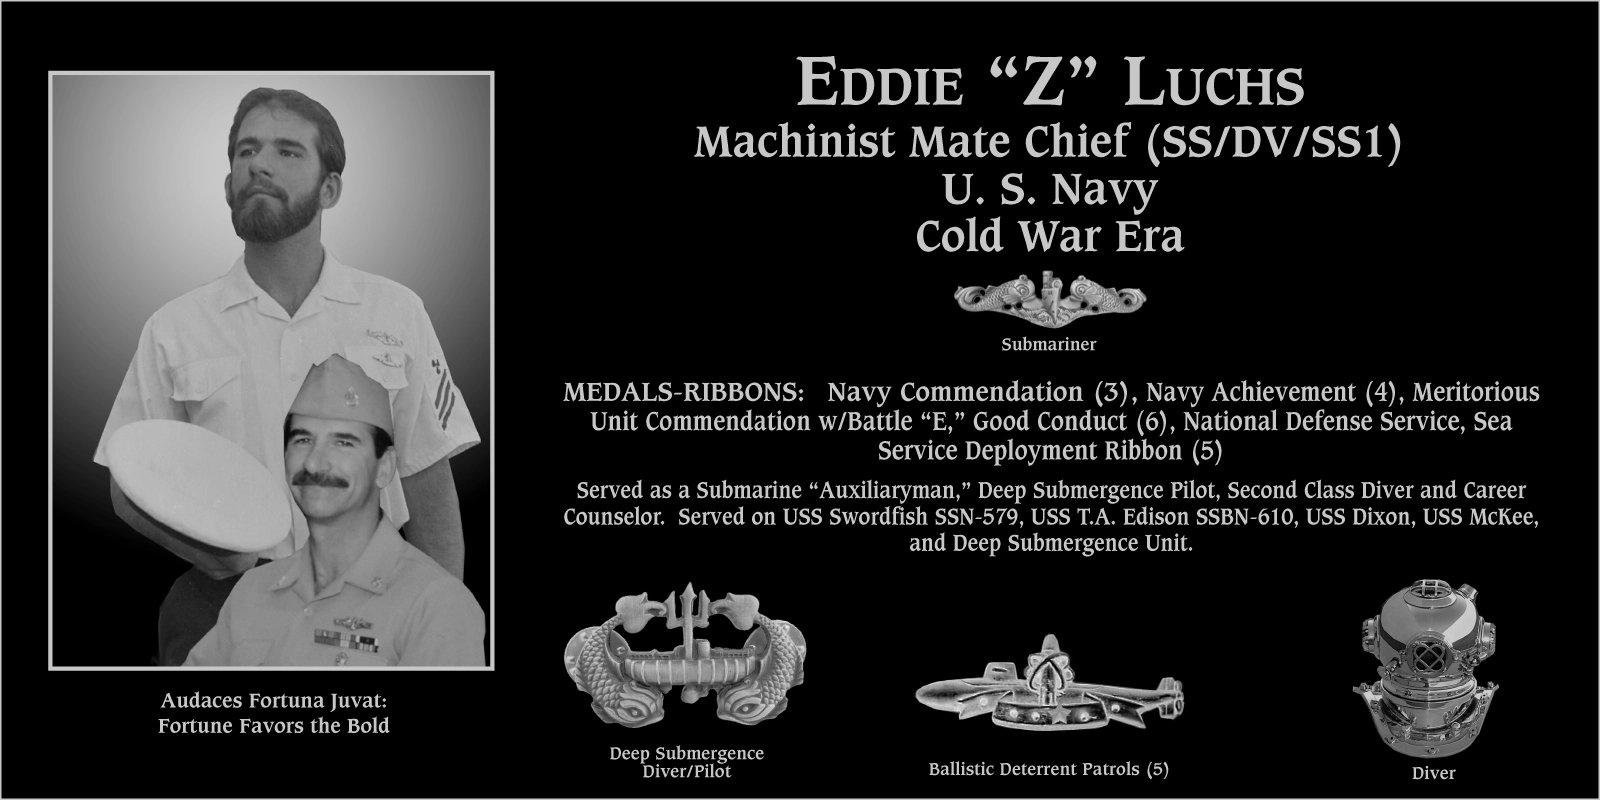 Eddie “Z” Luchs